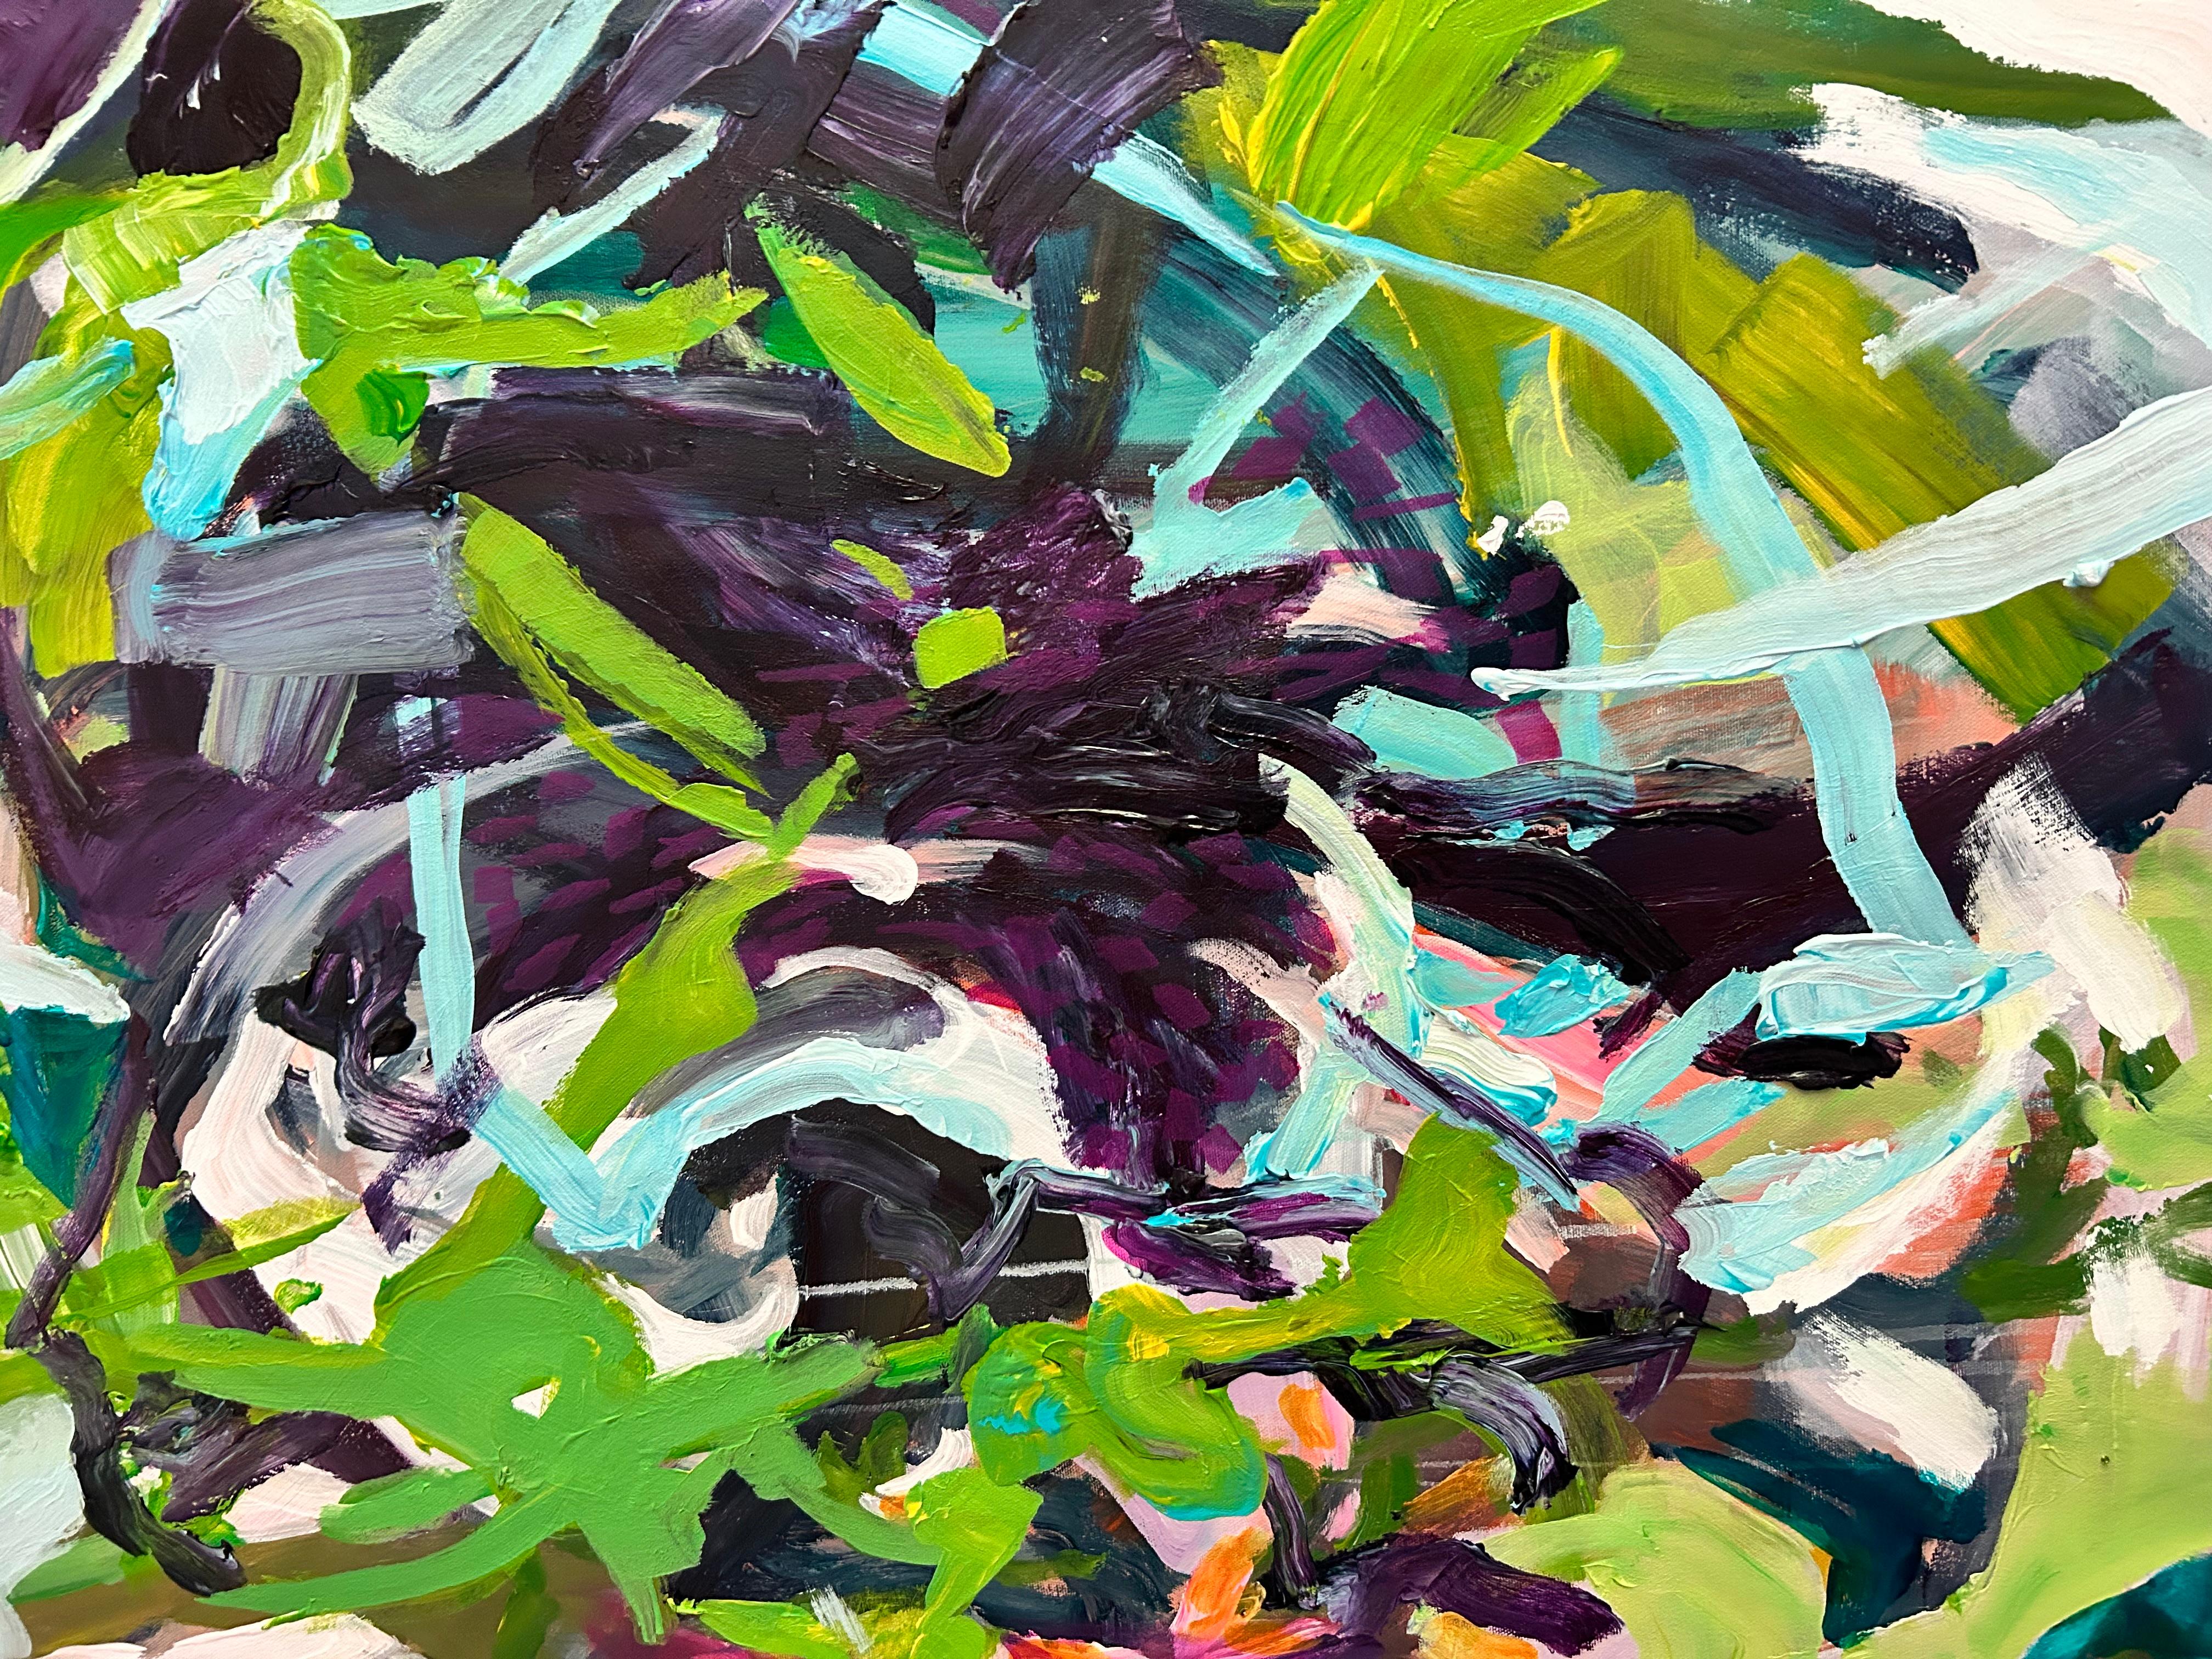 <p>Commentaires de l'artiste<br>L'artiste Julia Hacker présente une fleur abstraite aux tons verts luxuriants. Il met en valeur l'énergie et le mouvement du pinceau, reflétant le mouvement des plantes dans le vent d'été. Les tourbillons et les